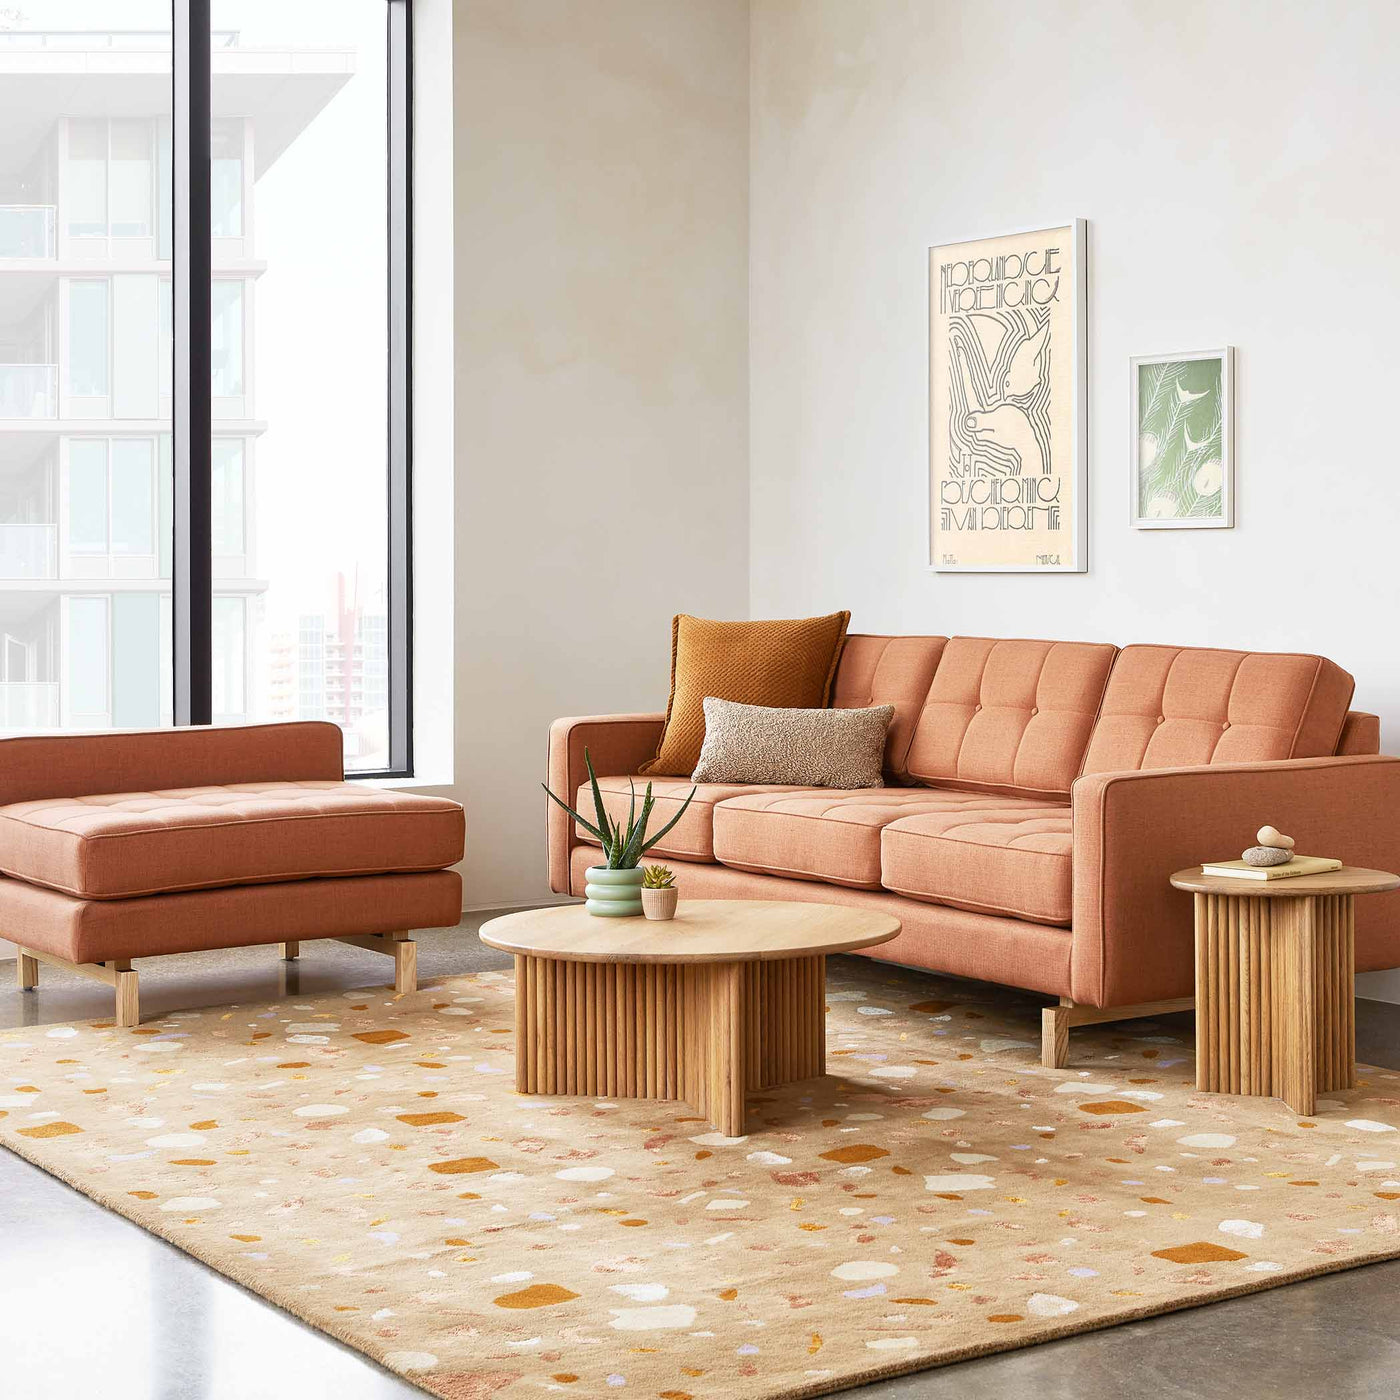 Découvrez le sofa bi-sectionnel Jane Loft 2 de Gus* Modern : une fusion parfaite entre le style classique Mid-century et les fonctionnalités contemporaines